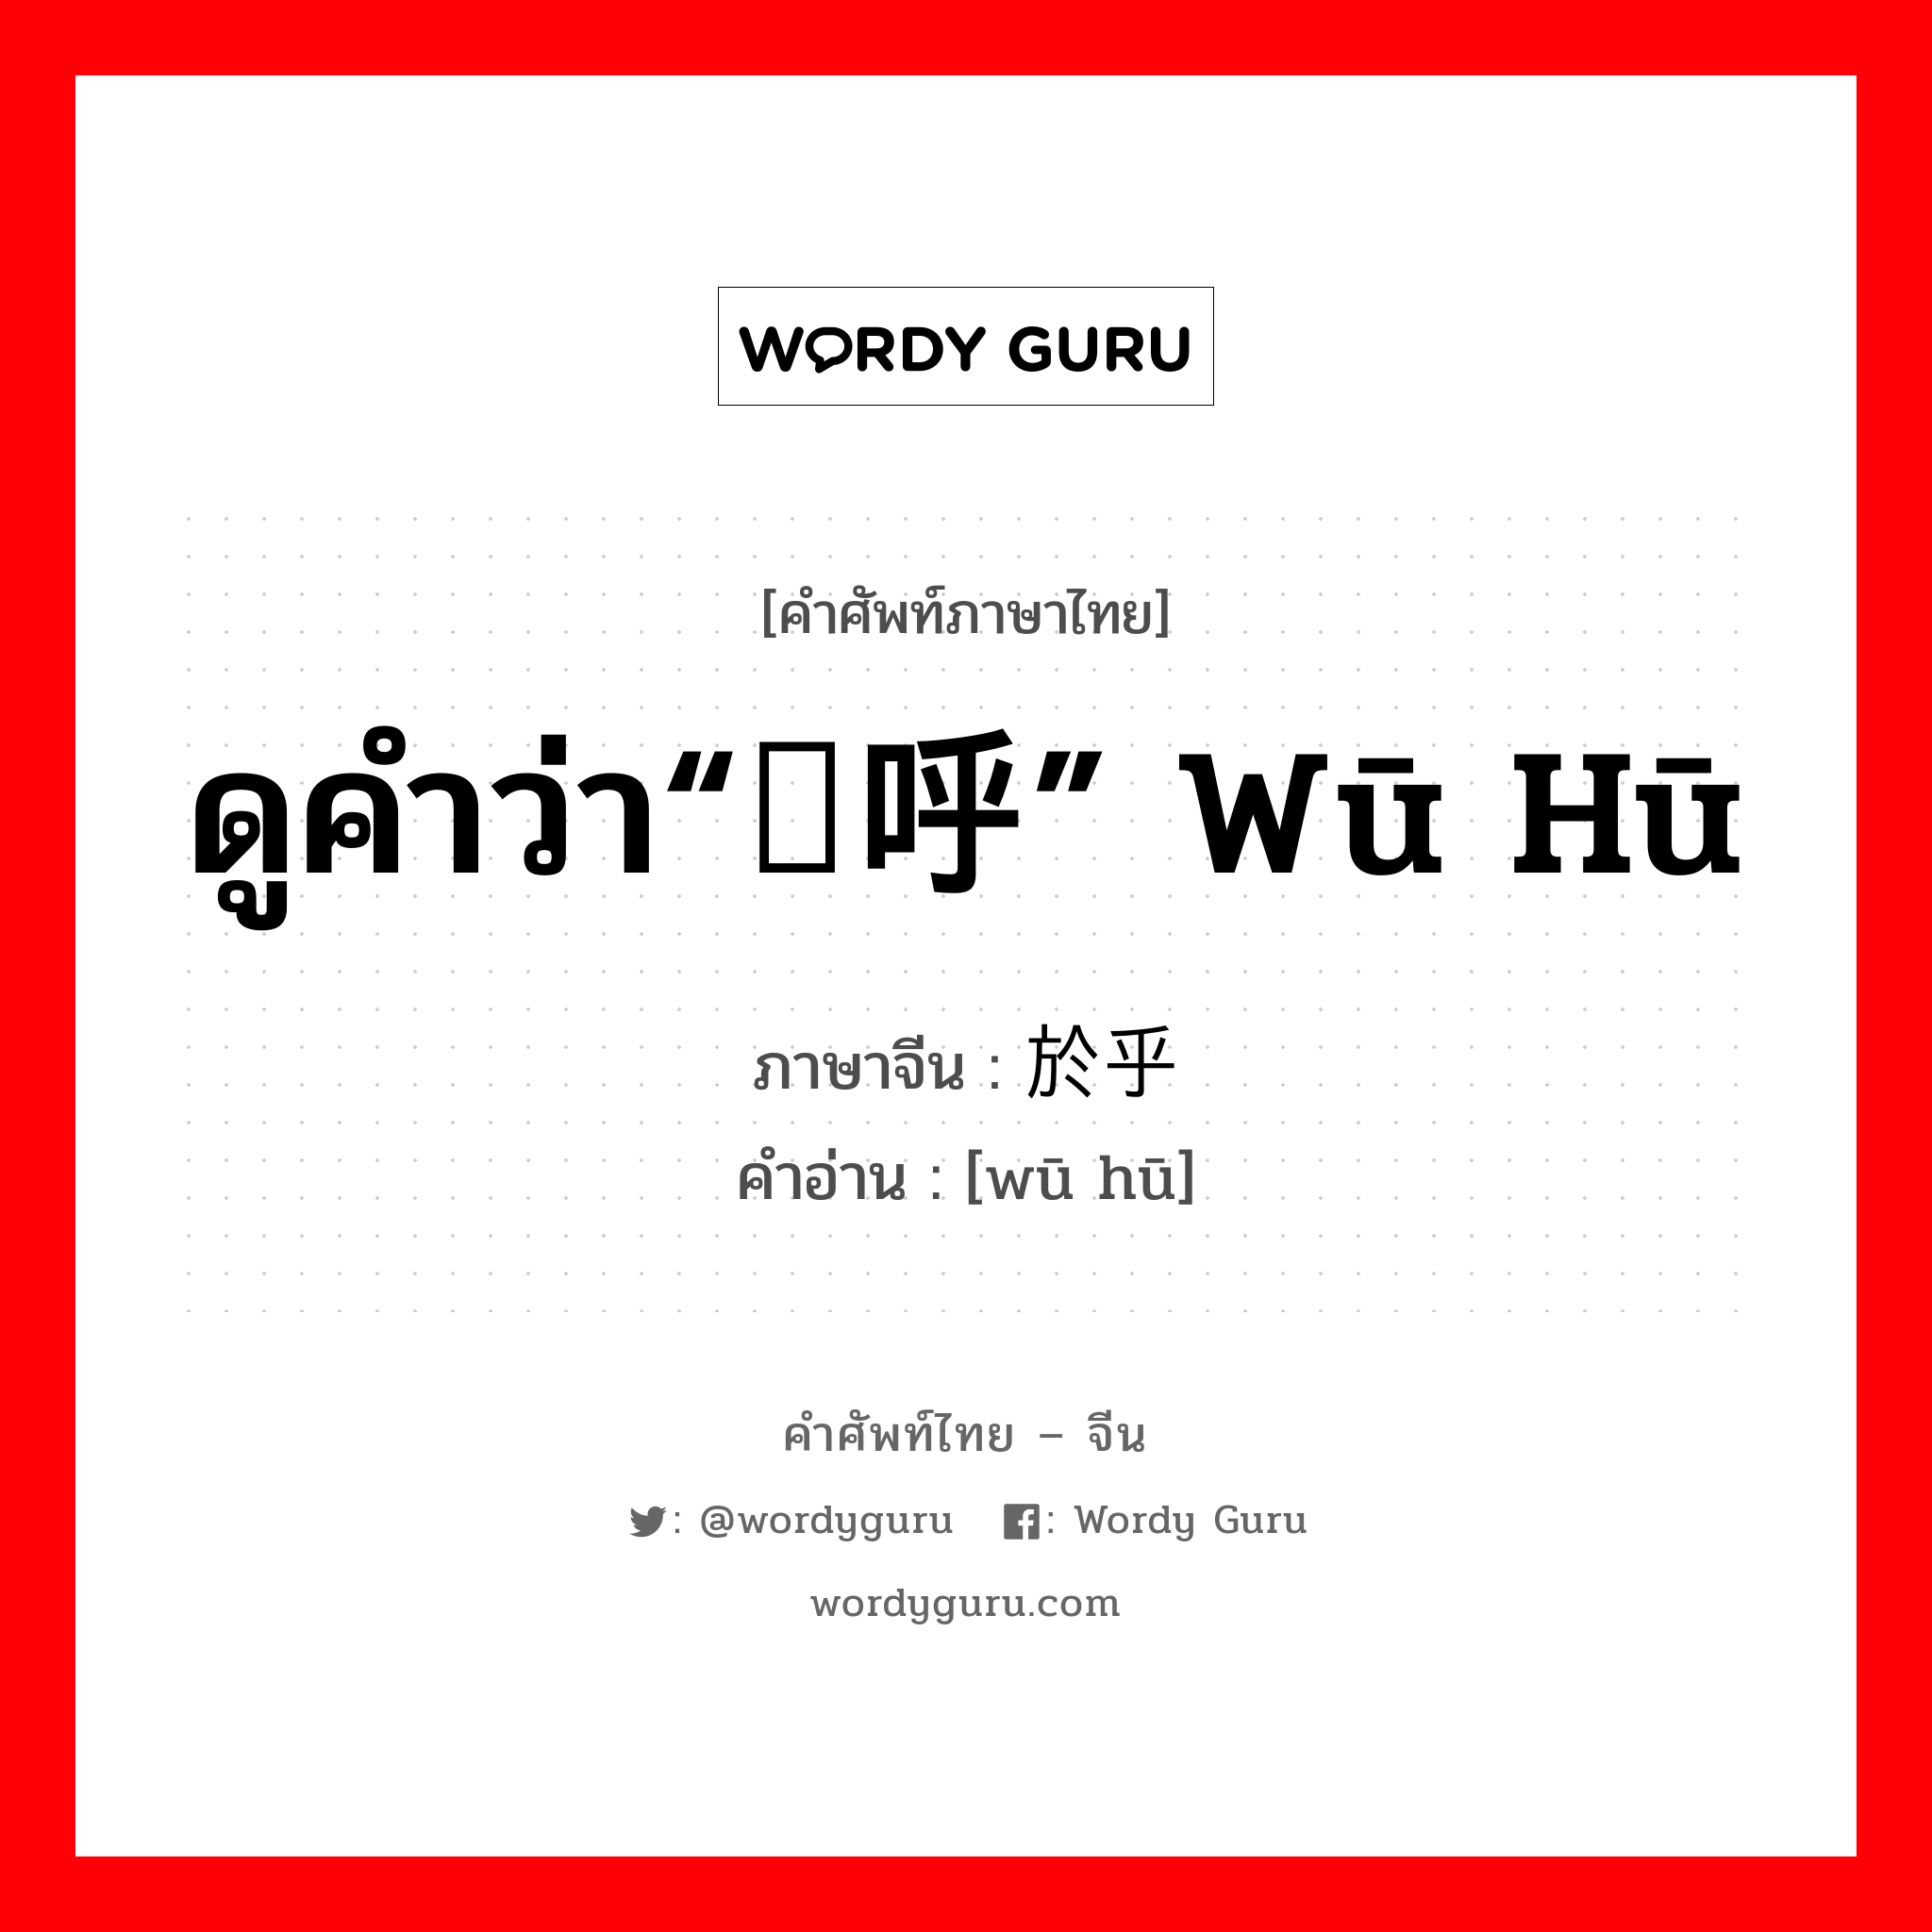 ดูคำว่า“呜呼” wū hū ภาษาจีนคืออะไร, คำศัพท์ภาษาไทย - จีน ดูคำว่า“呜呼” wū hū ภาษาจีน 於乎 คำอ่าน [wū hū]